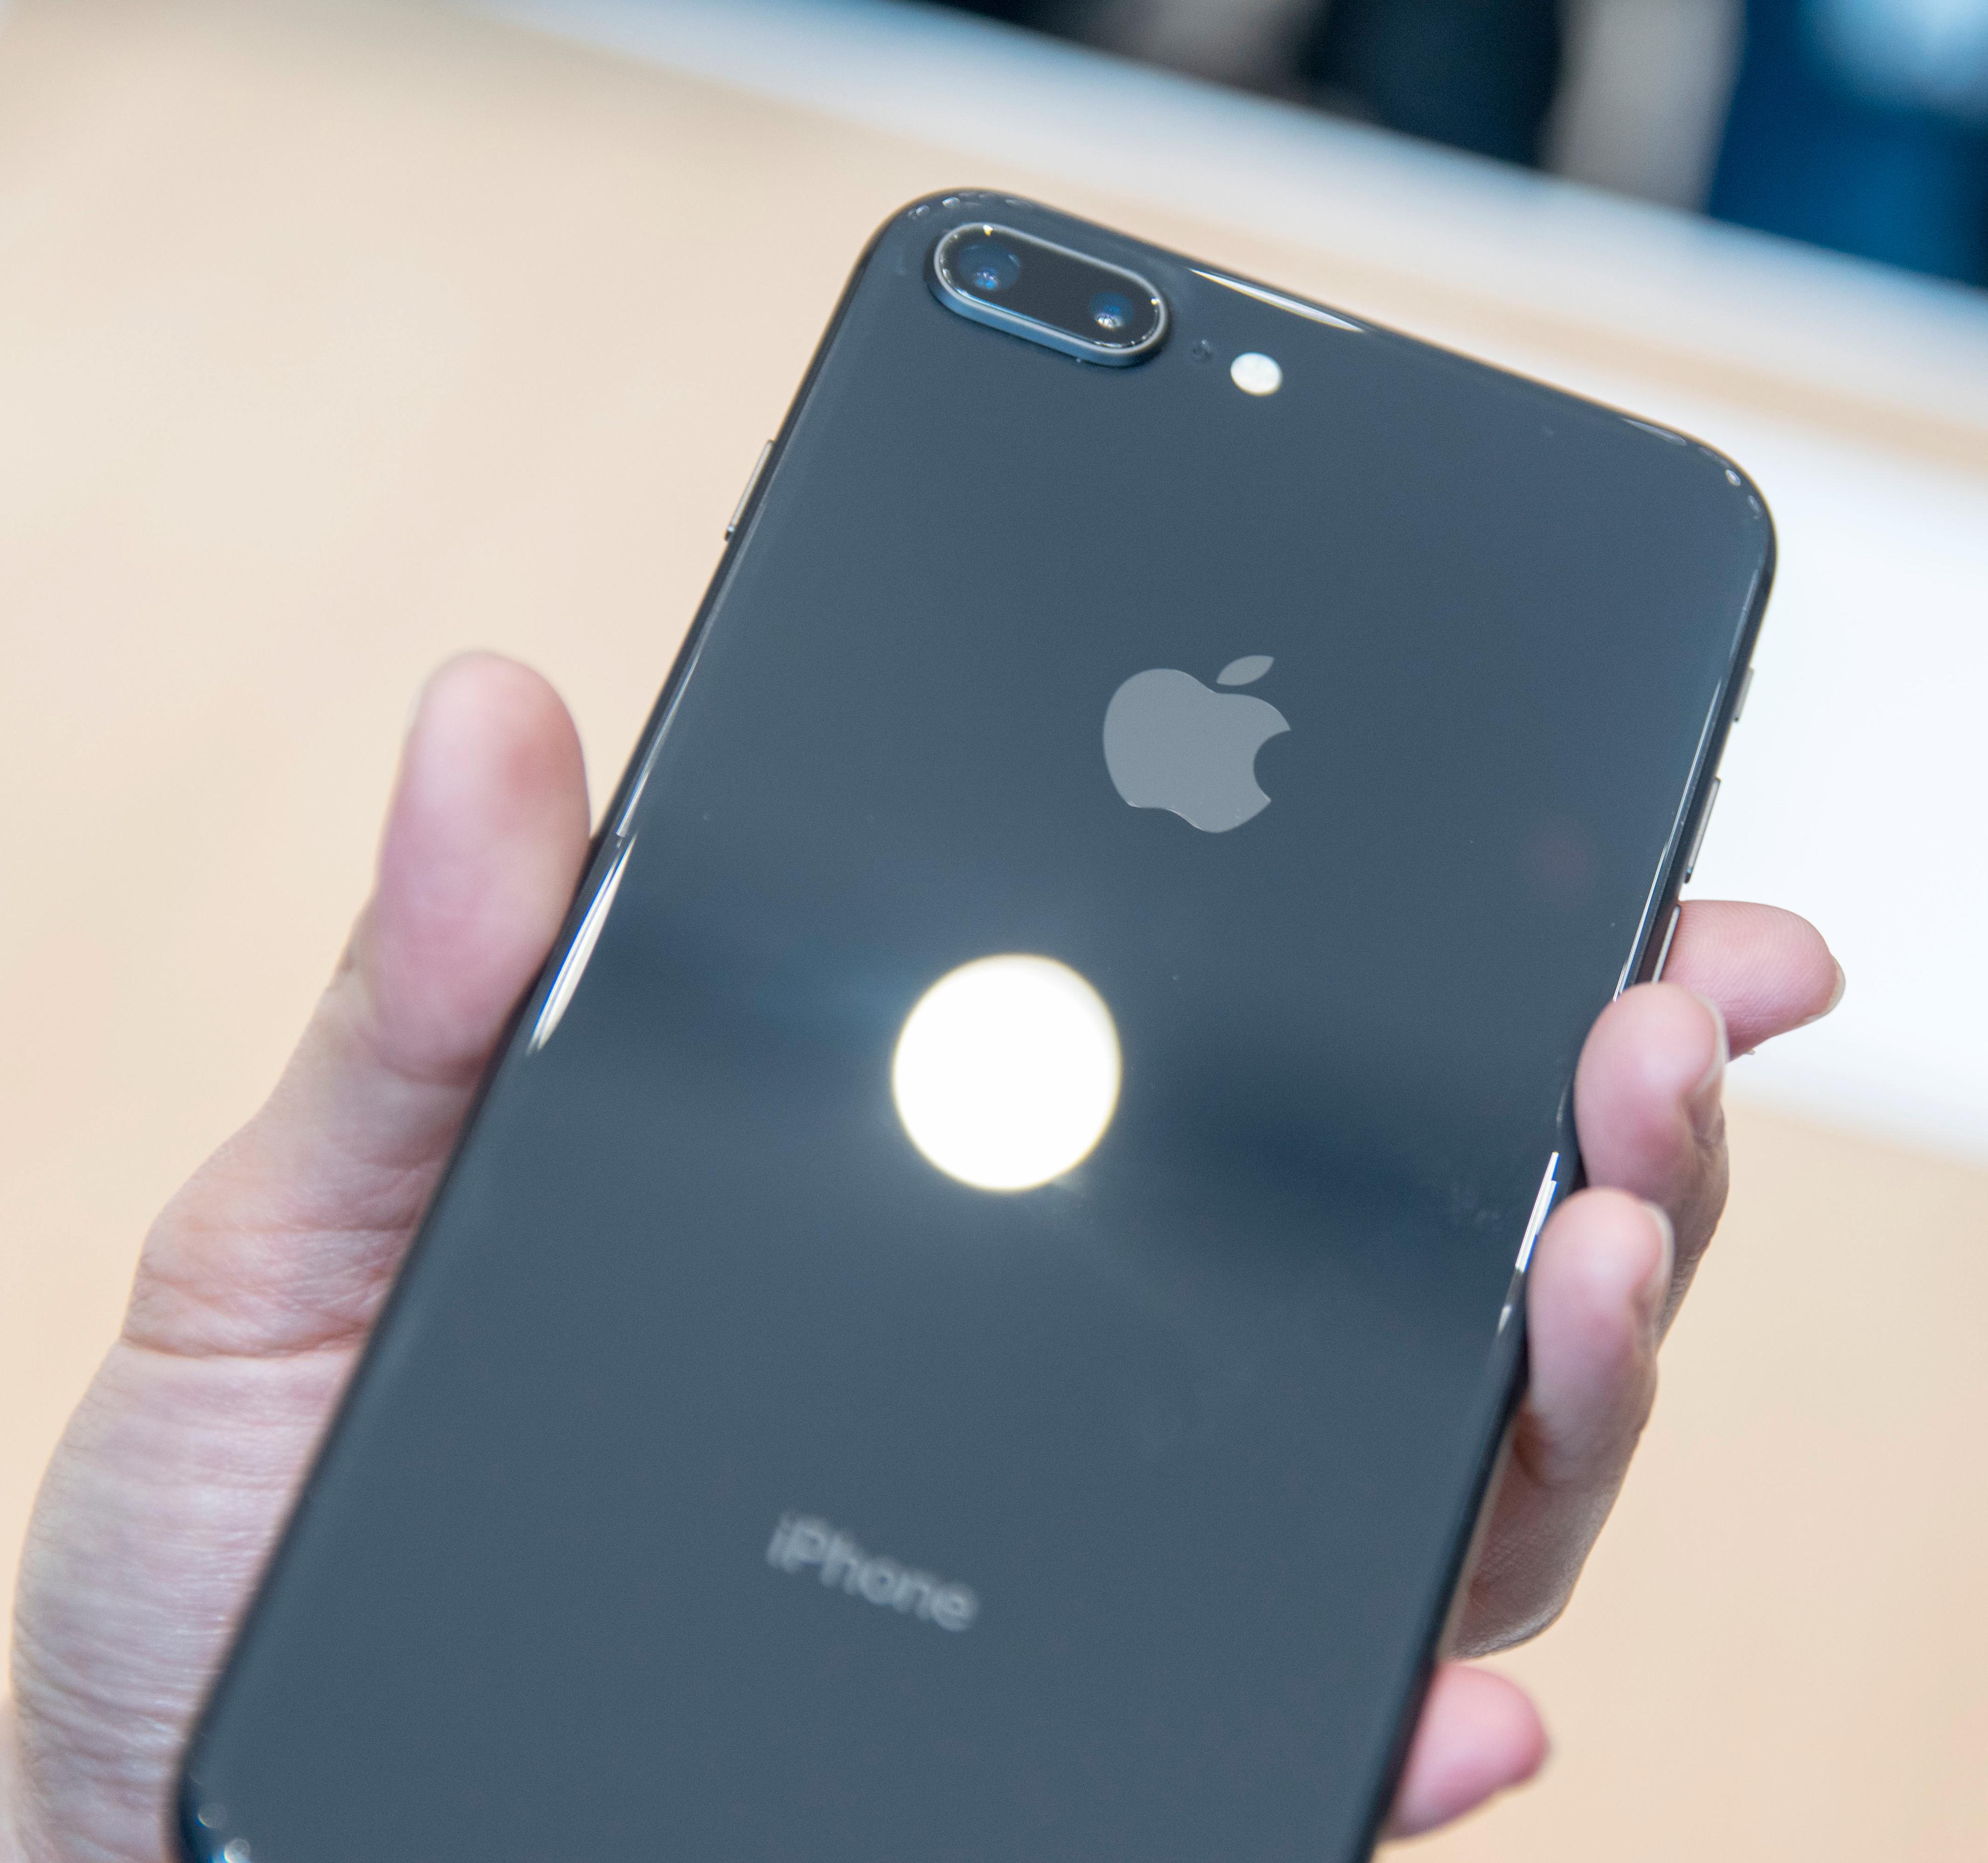 Blanke baksider i glass gjør at de nye iPhone-modellene kan lade trådløst. Dette er iPhone 8 Plus, som deler enkelte av kameraegenskapene med iPhone X.